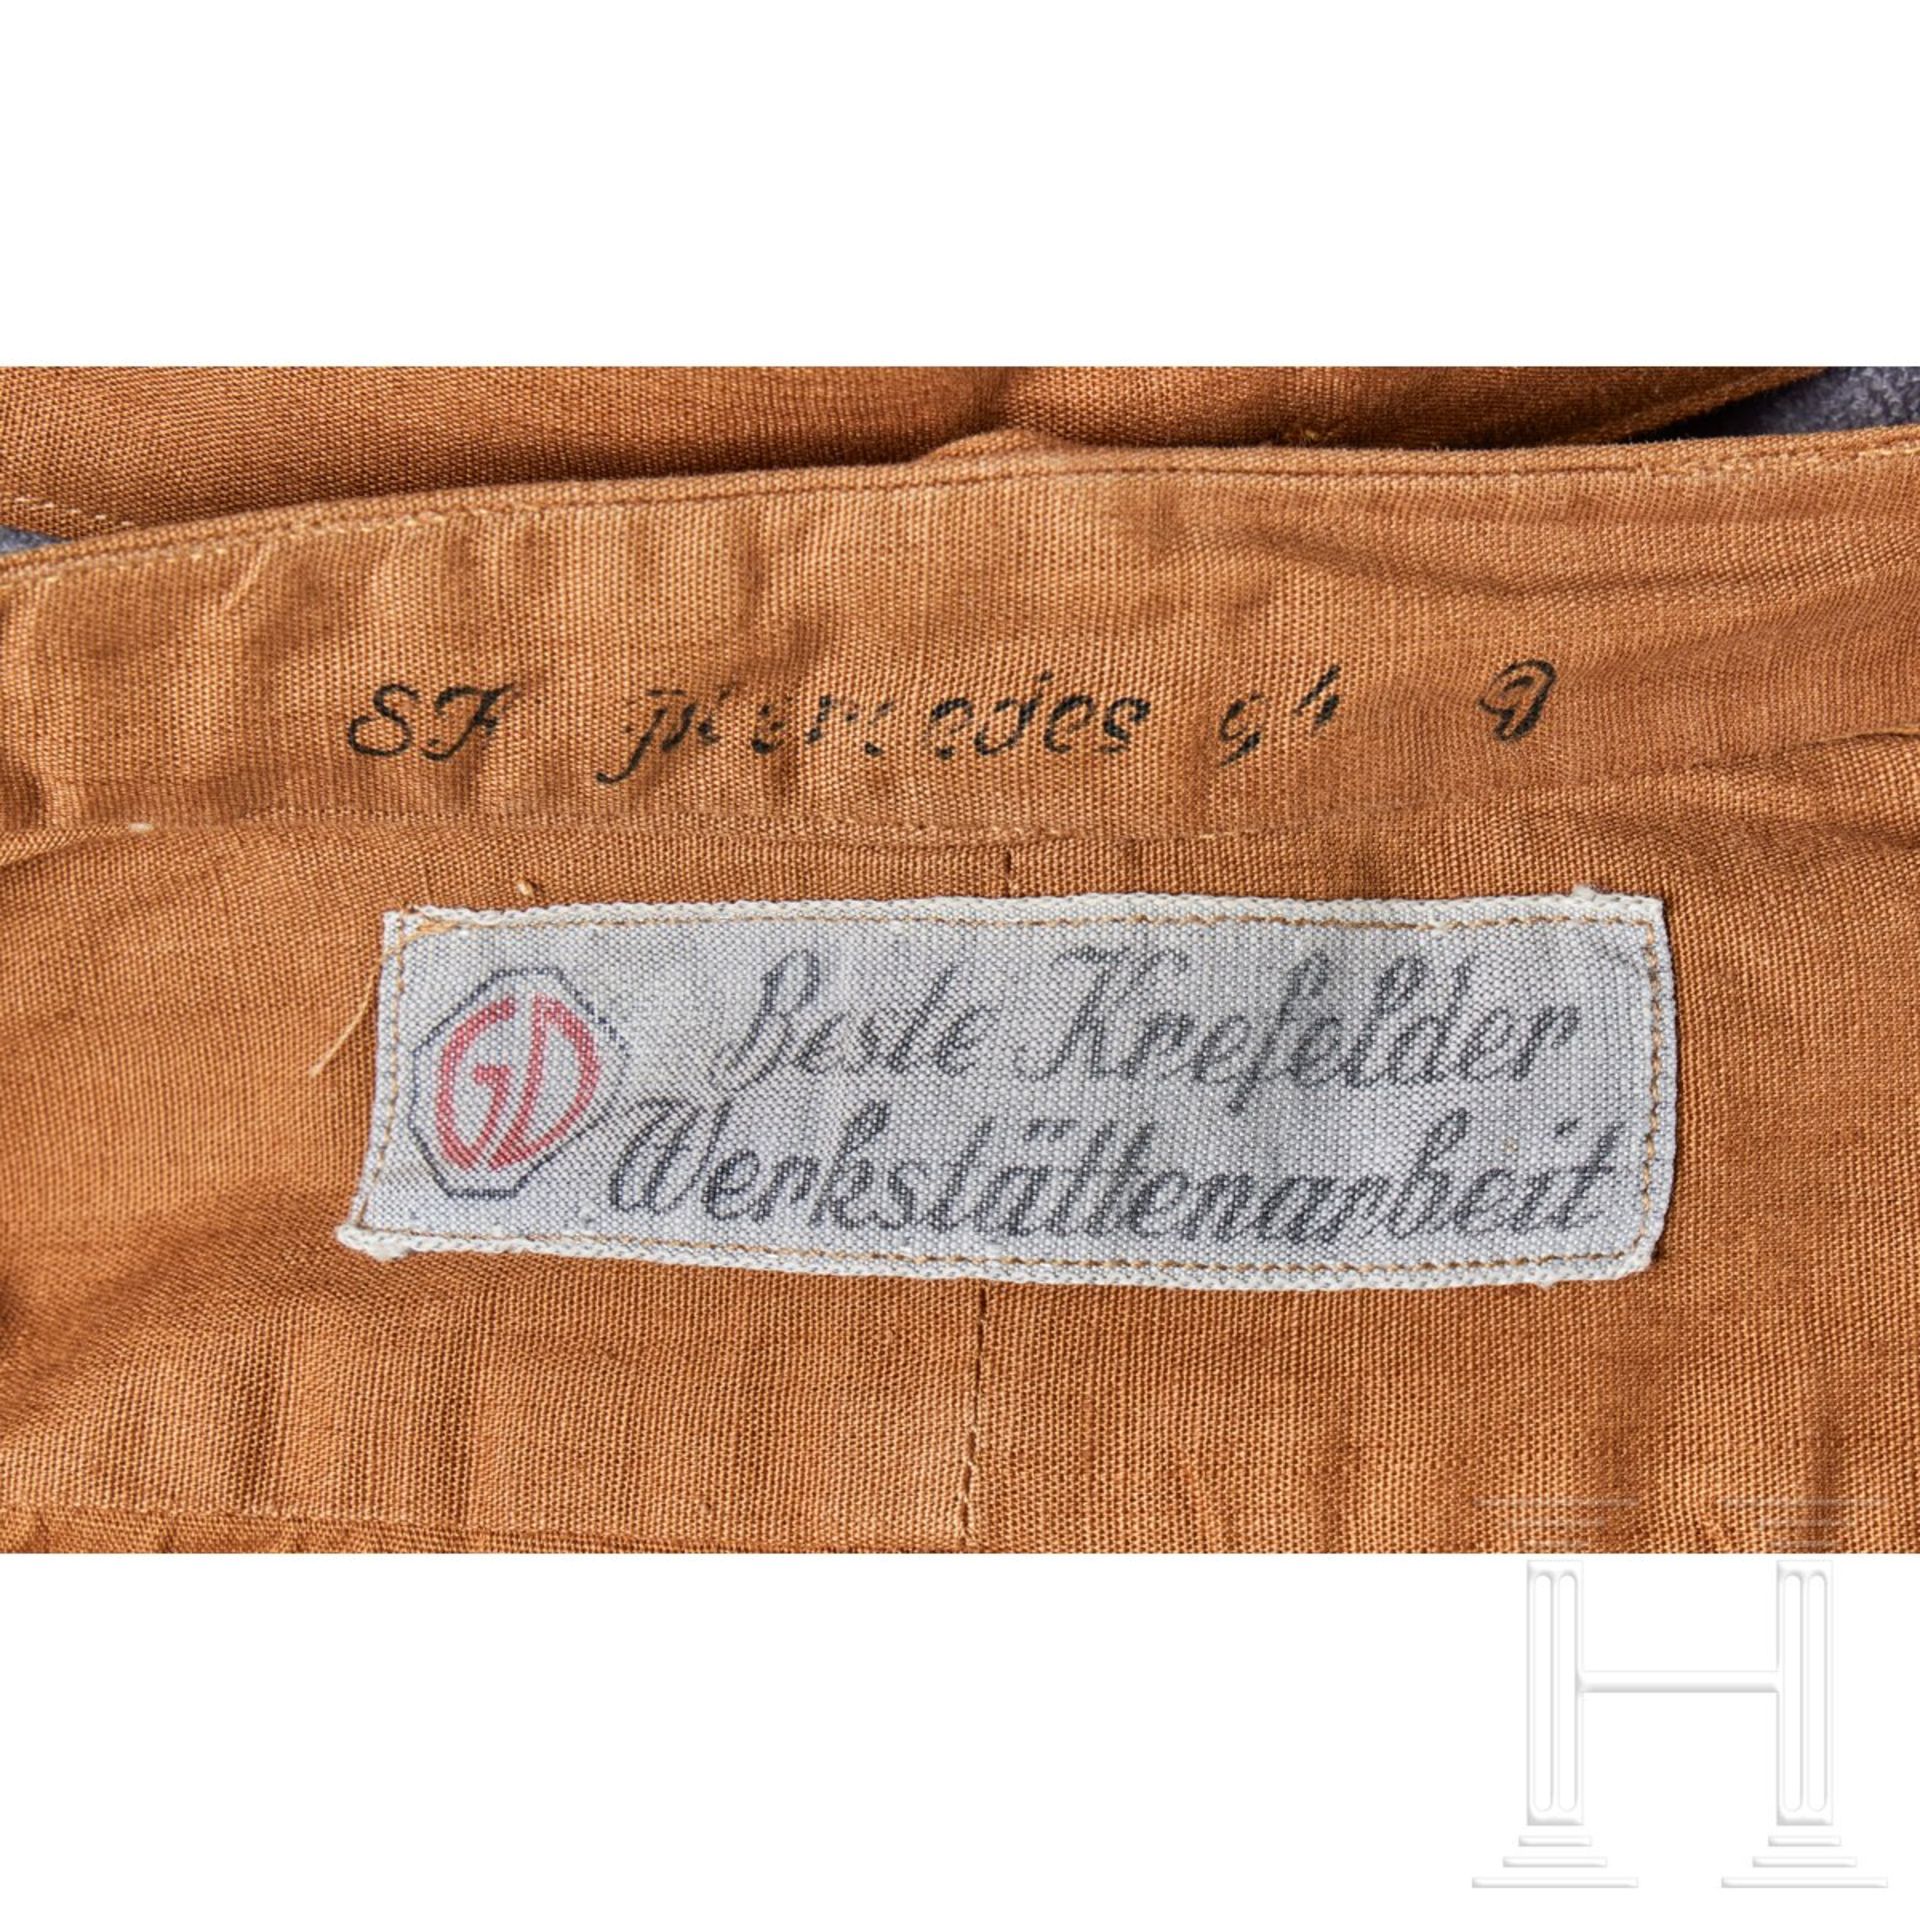 A Brown Uniform Shirt for SS-Verfügungstruppe - Bild 3 aus 3